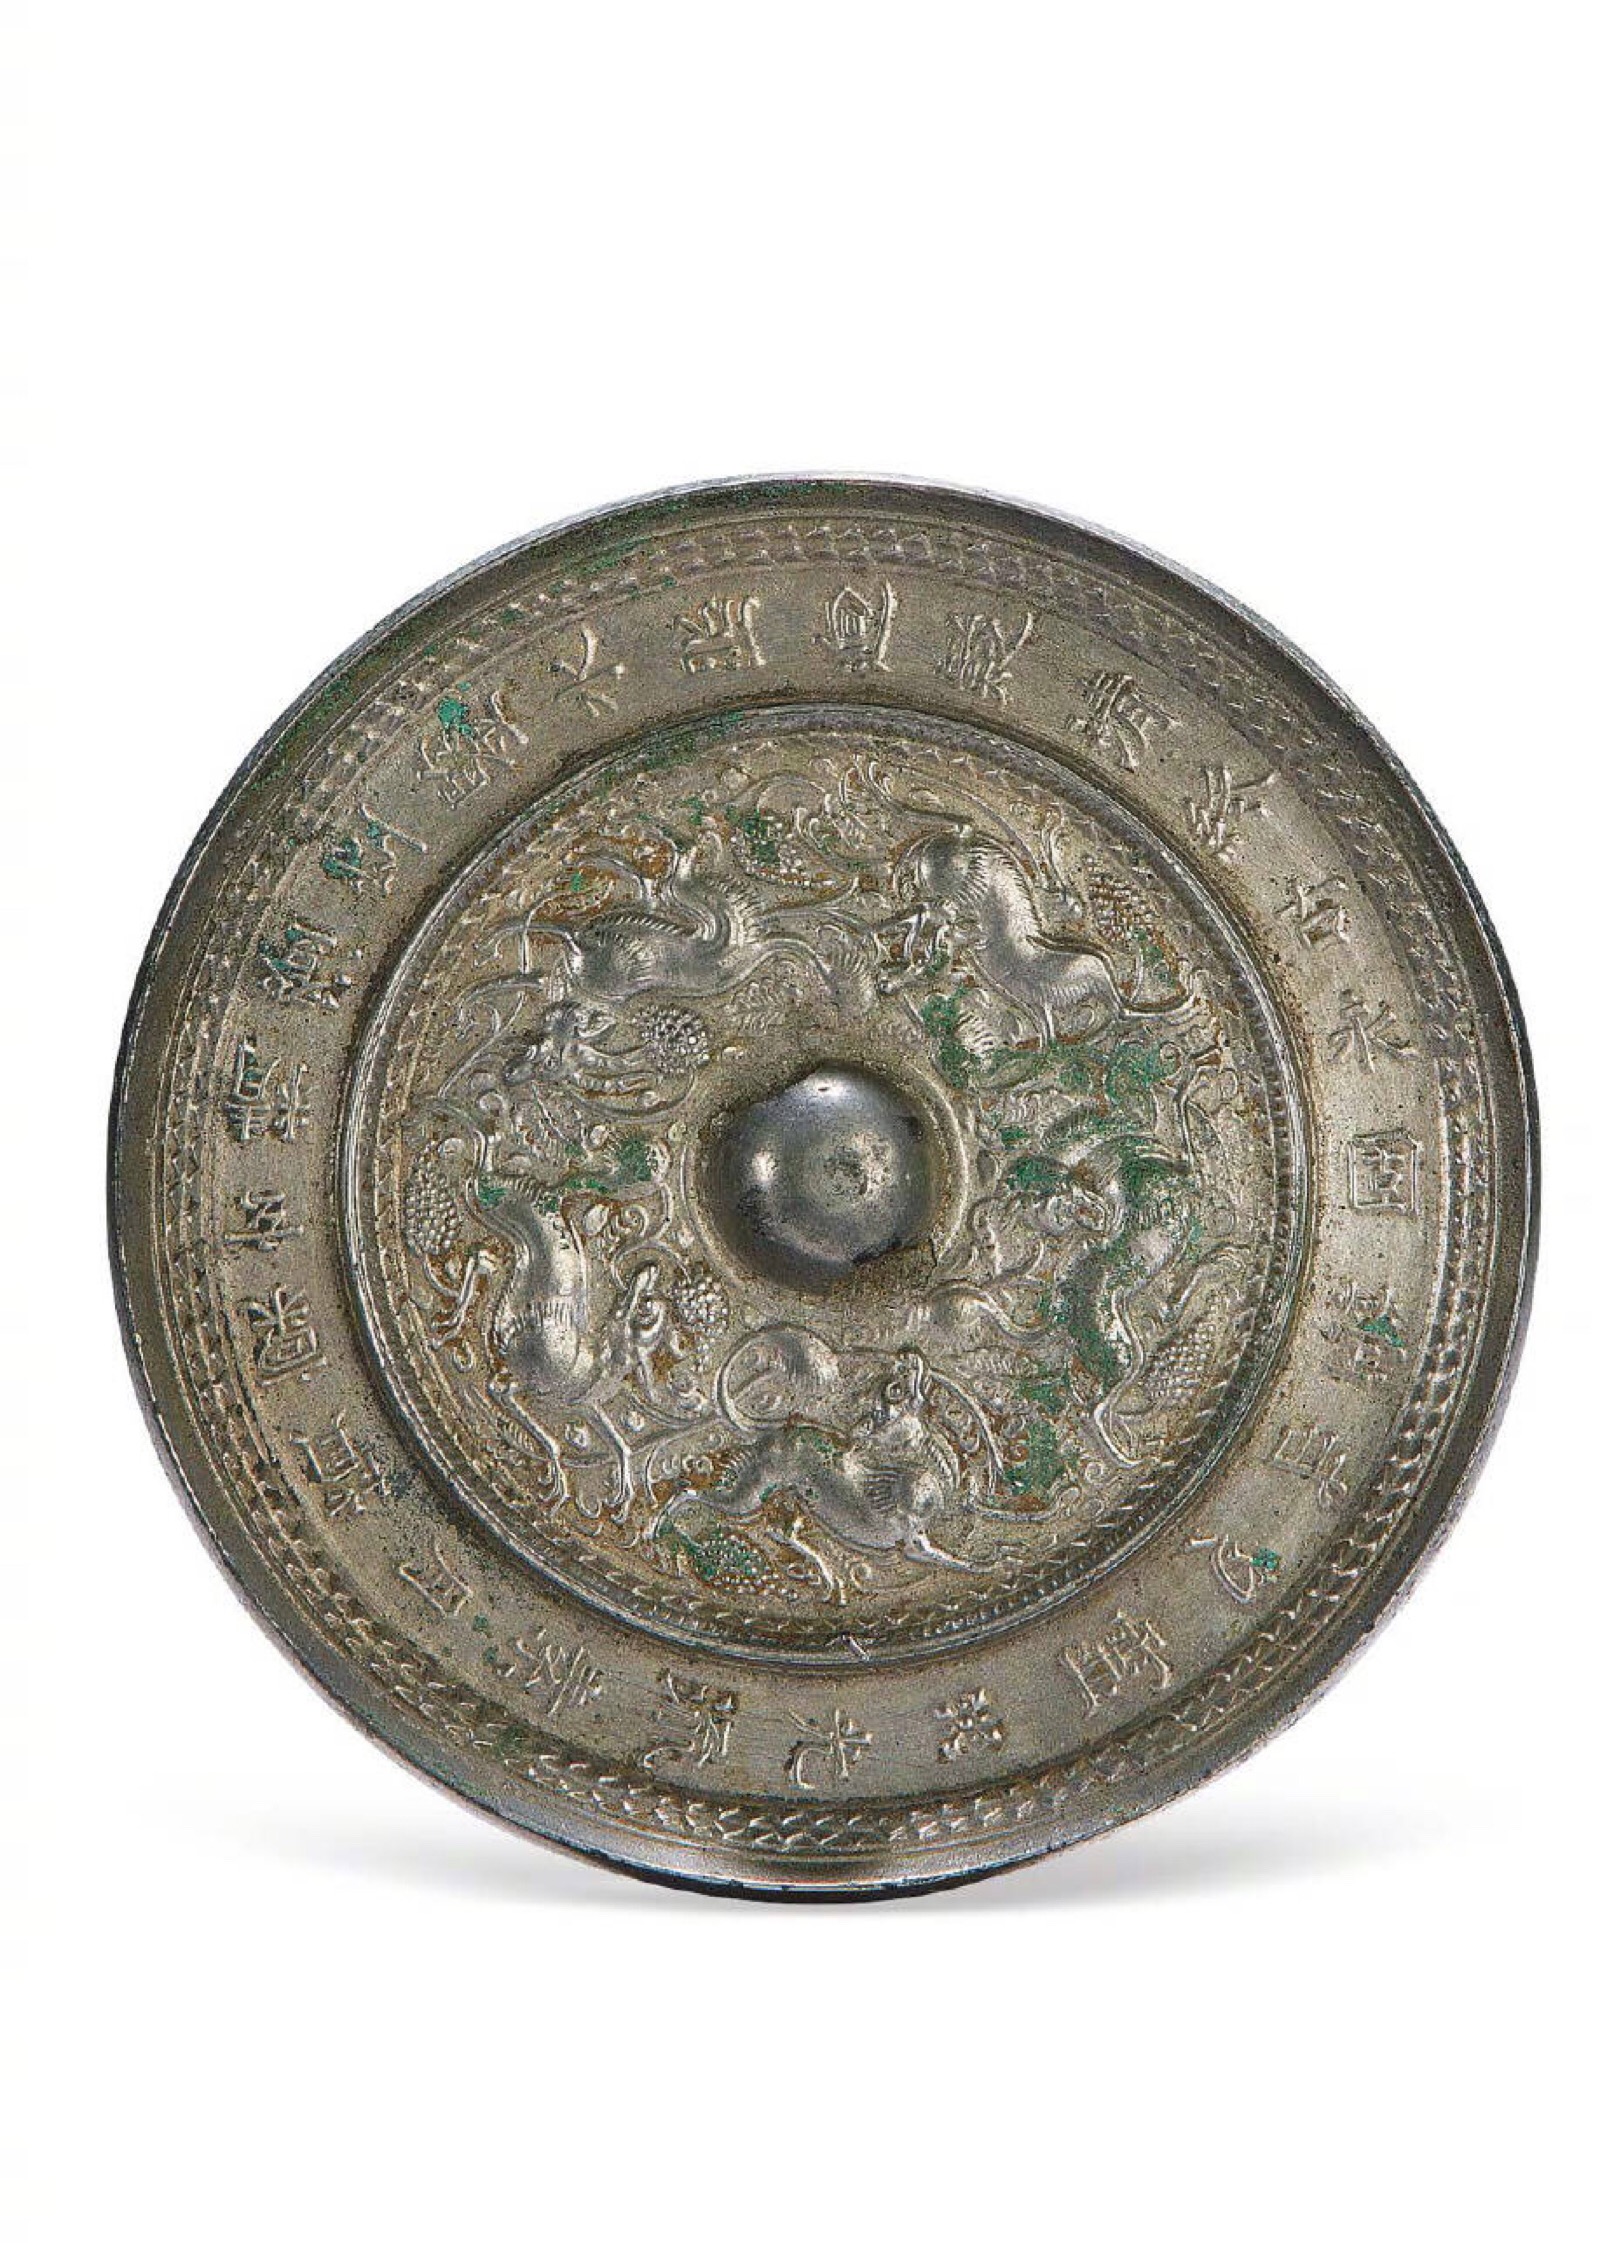 瑞兽葡萄纹铜镜是唐朝典型铜镜之一,代表了1600